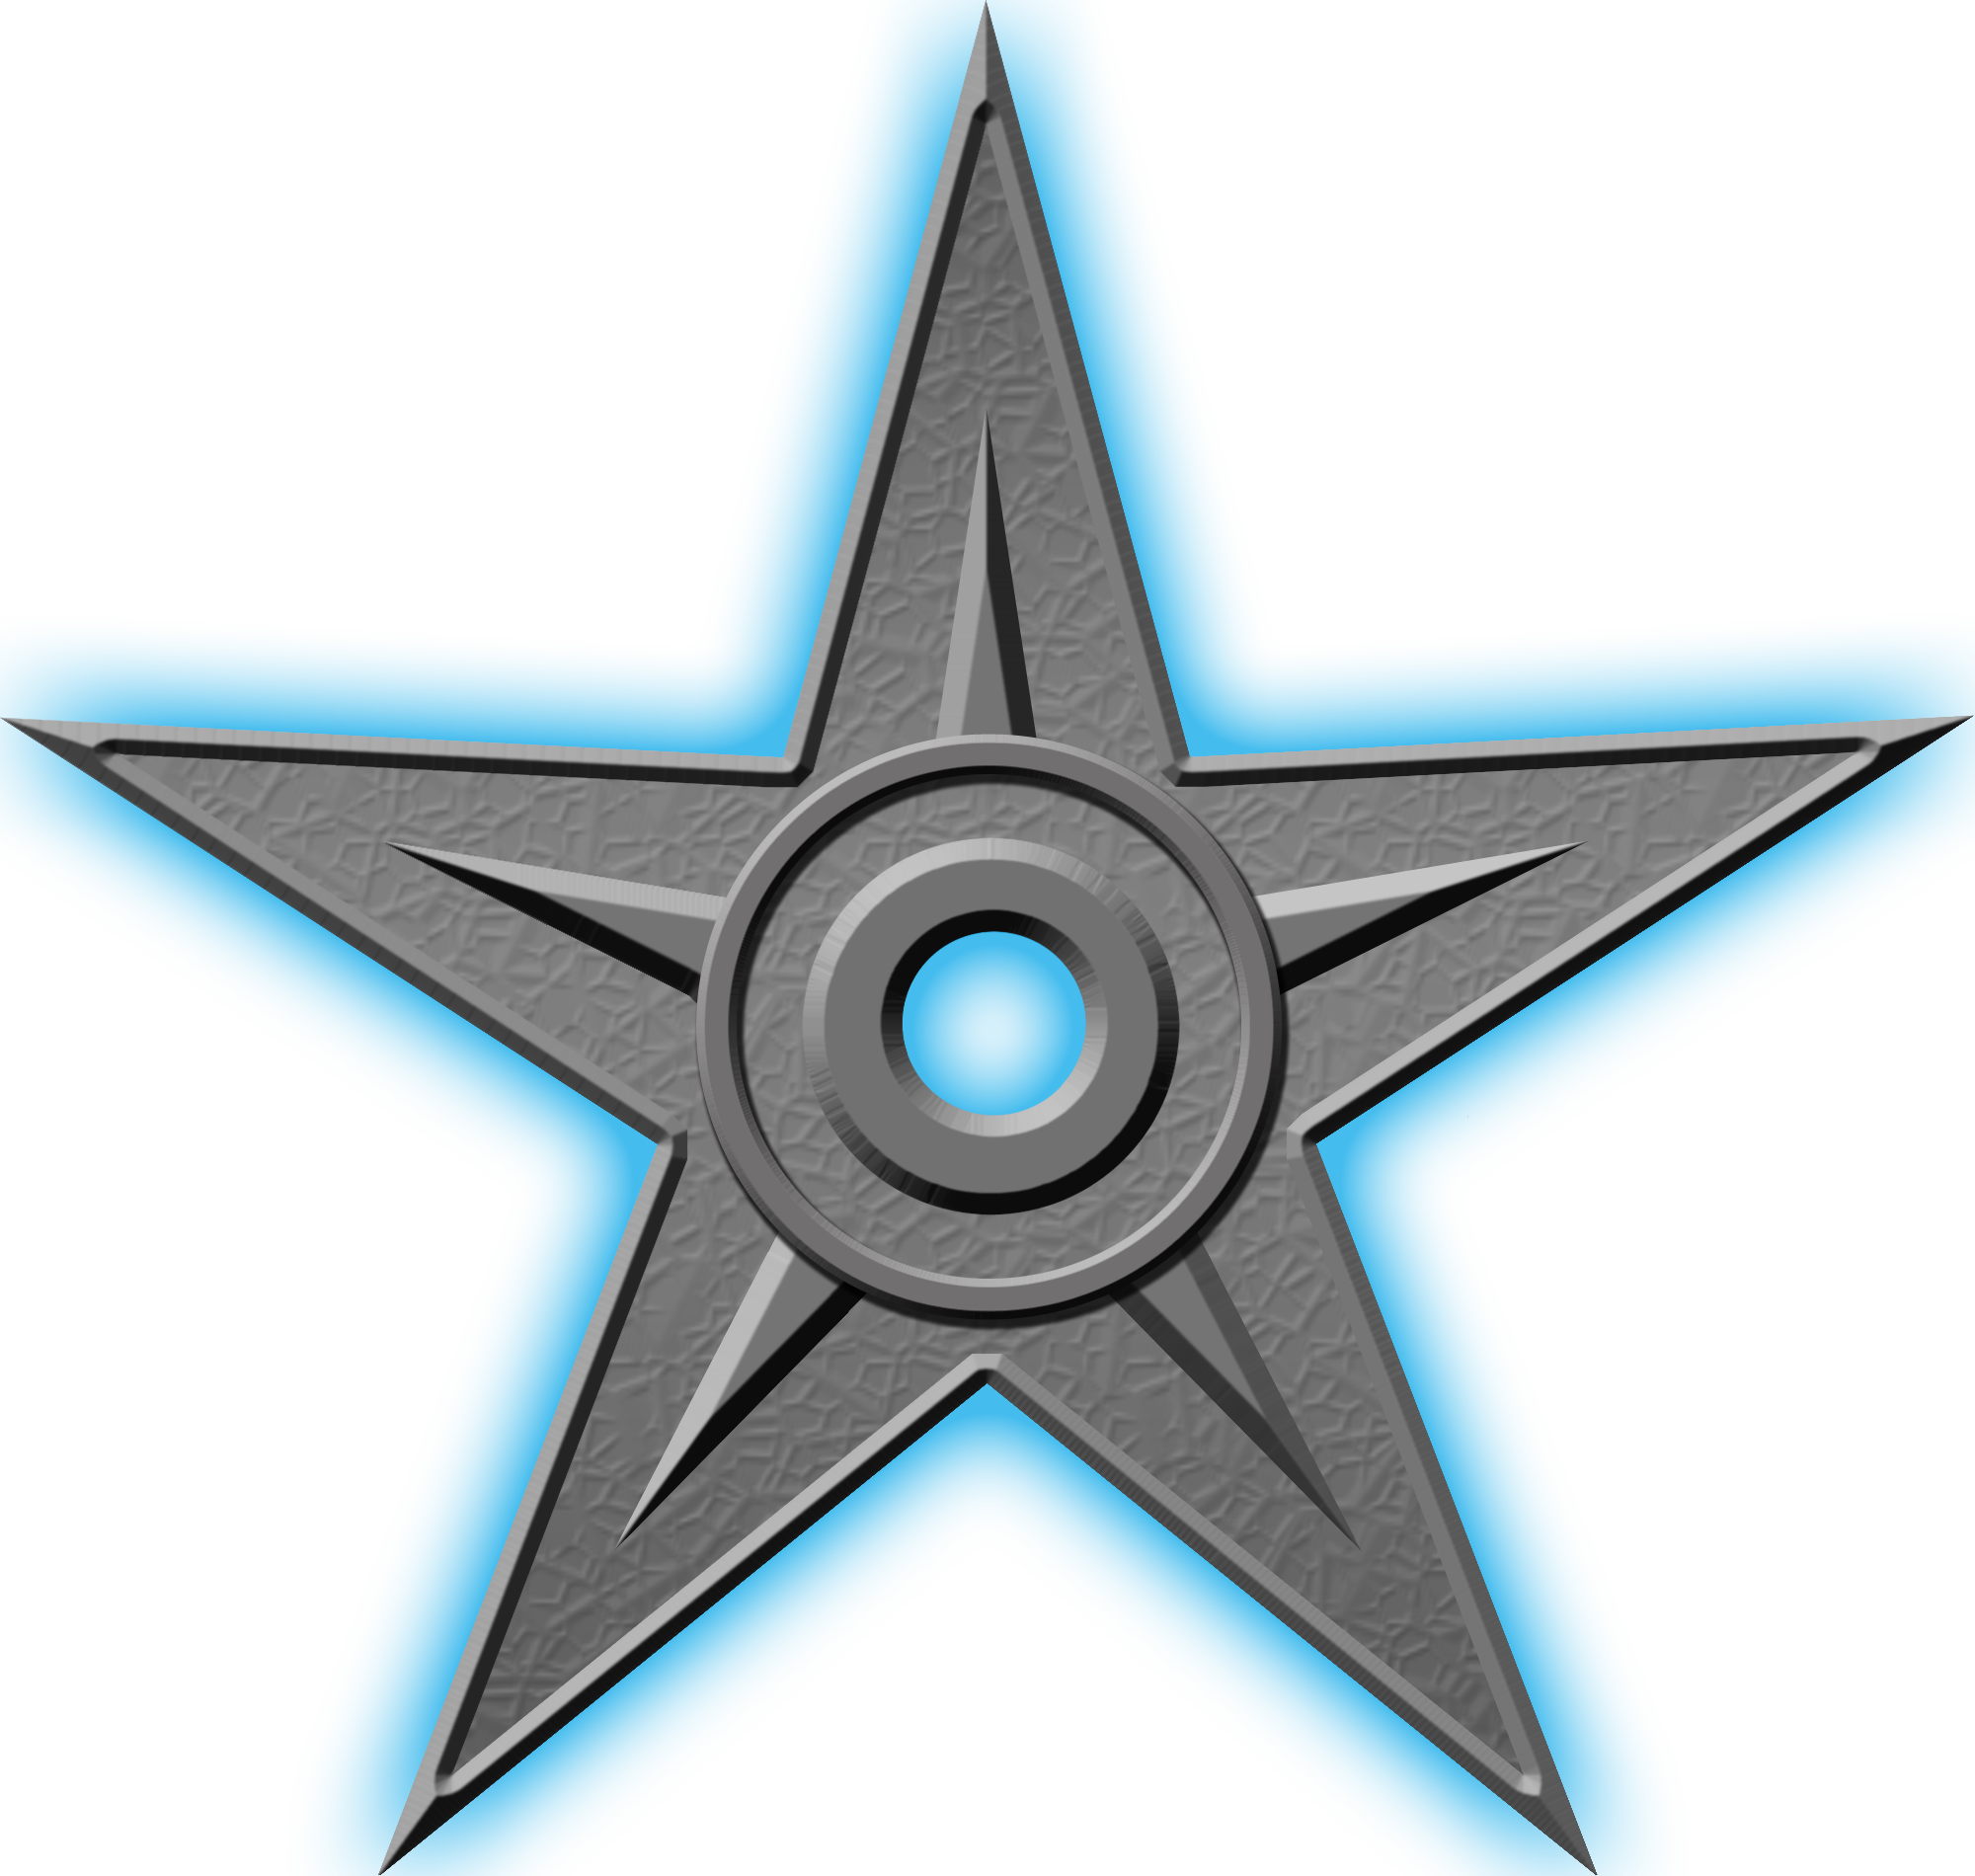 Орден #1 «За выдающиеся заслуги», присвоен 21 января 2011 участником Lazyhawk за «локомотиву проекта Канада. За преданность теме и благодарность проекта номинанту ордена»